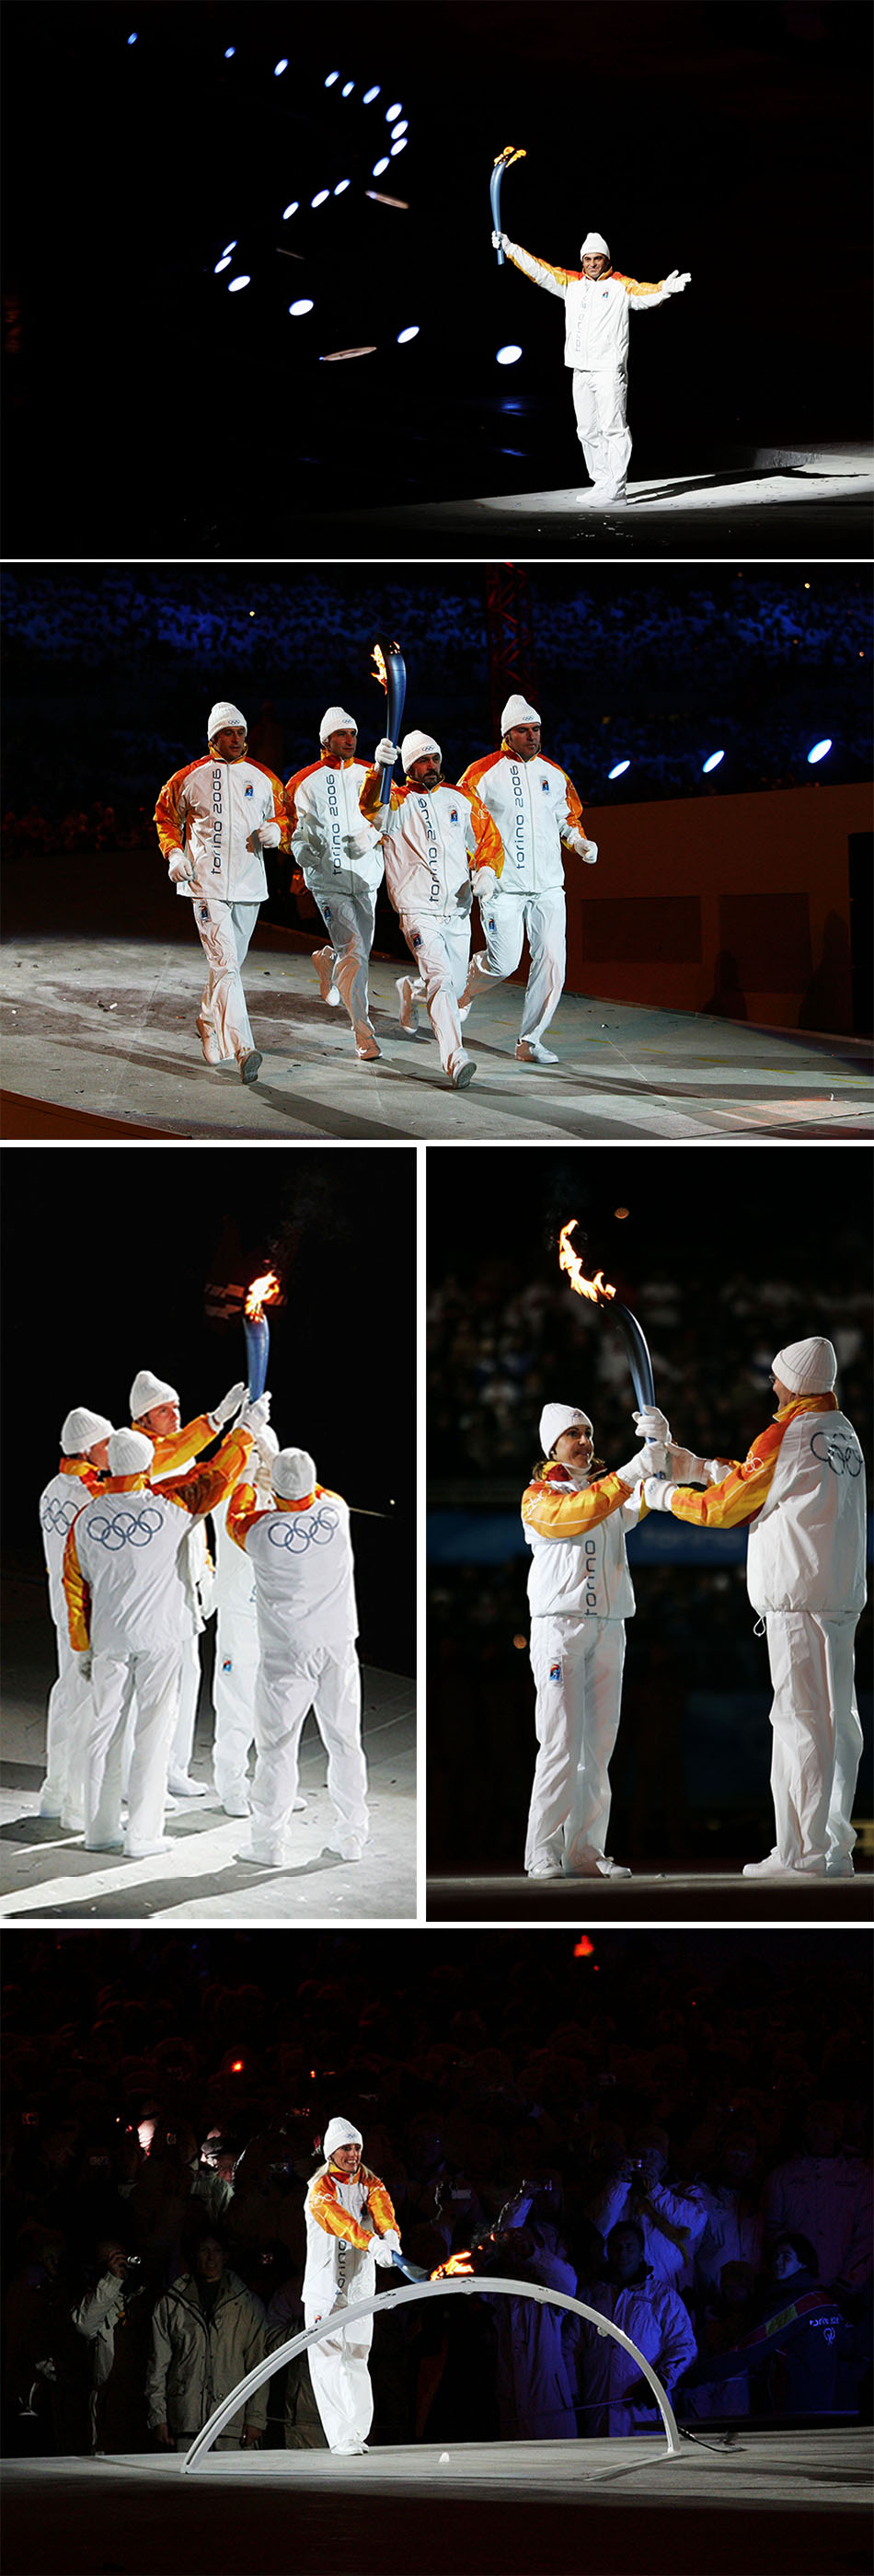 当地时间2006年2月10日,意大利都灵冬奥会开幕式现场,多位冬奥冠军